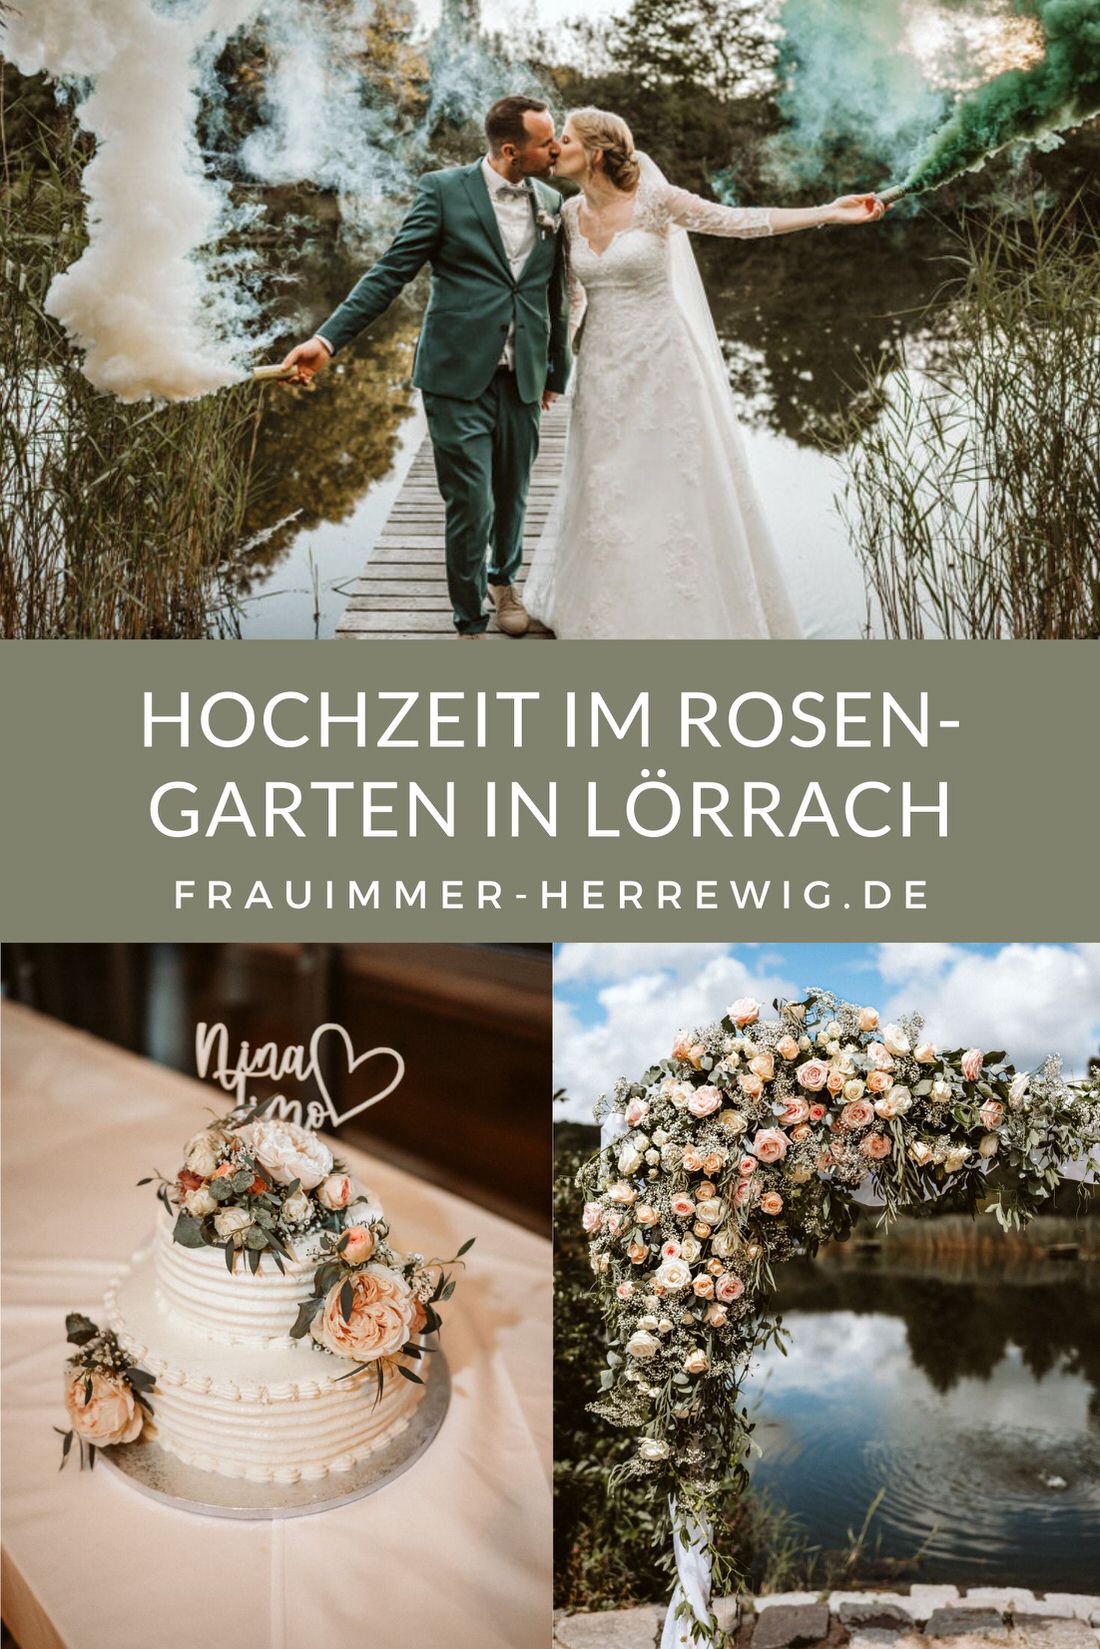 Hochzeit rosengarten loerrach – gesehen bei frauimmer-herrewig.de